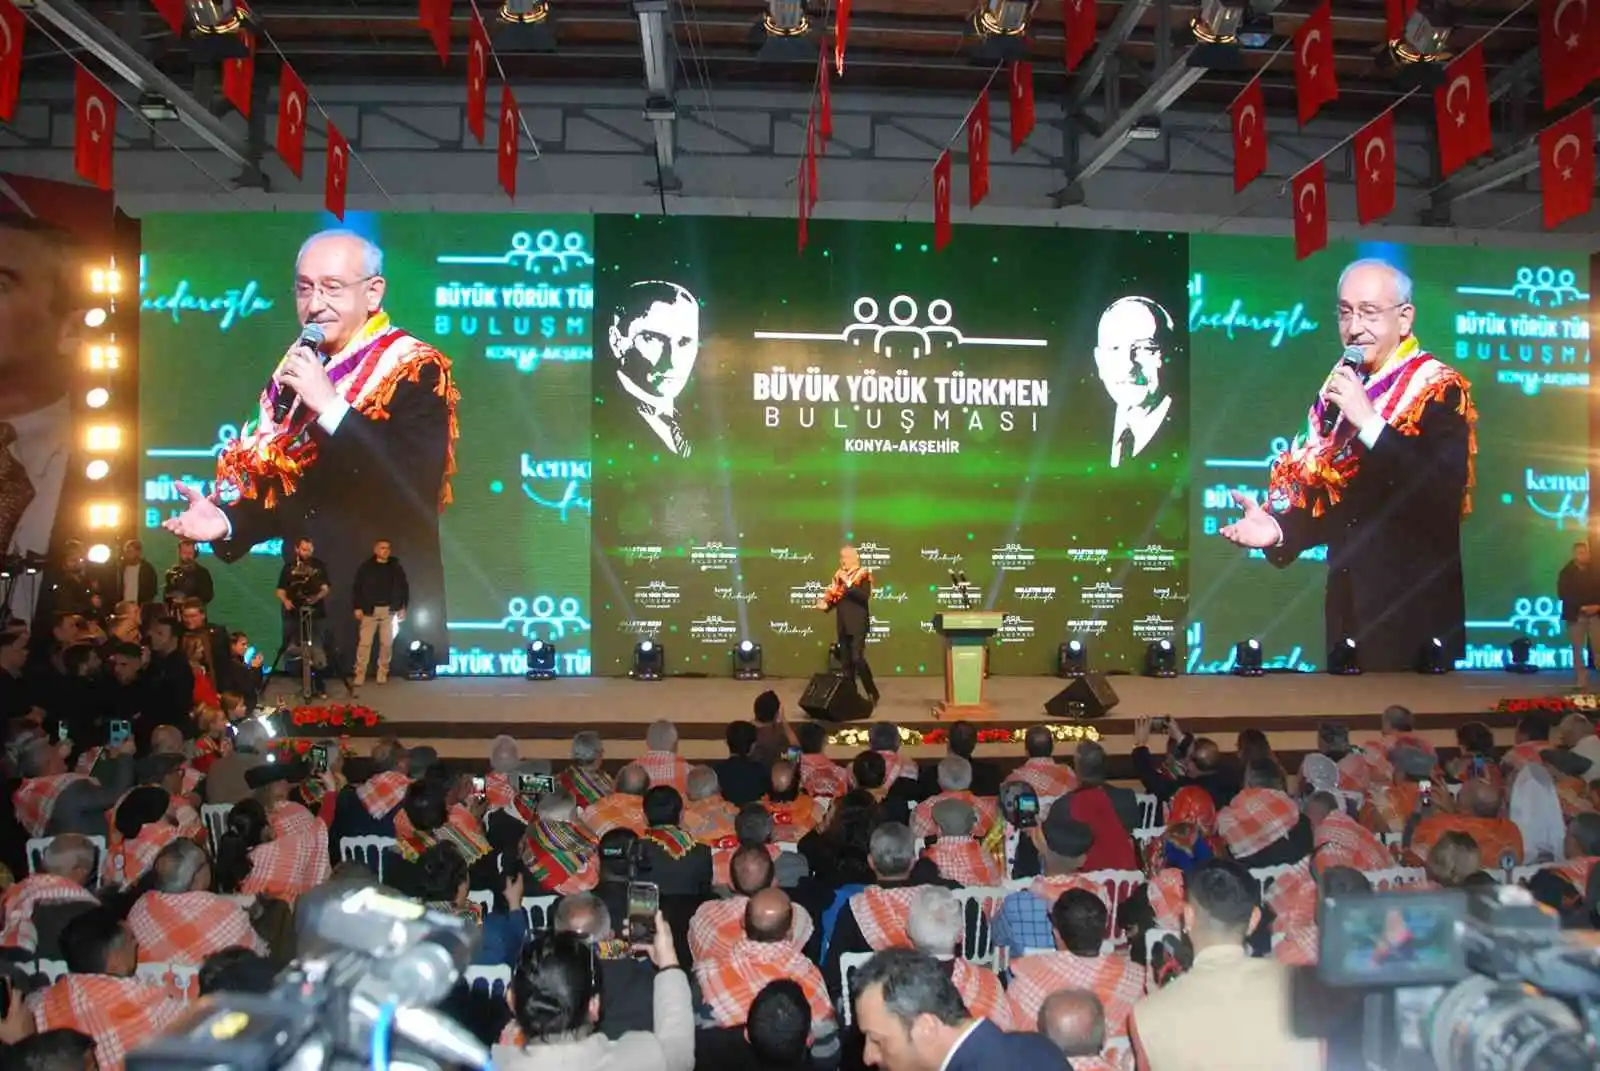 CHP Genel Başkanı Kılıçdaroğlu, Konya’da ’Büyük Yörük Türkmen Buluşması’ etkinliğine katıldı
